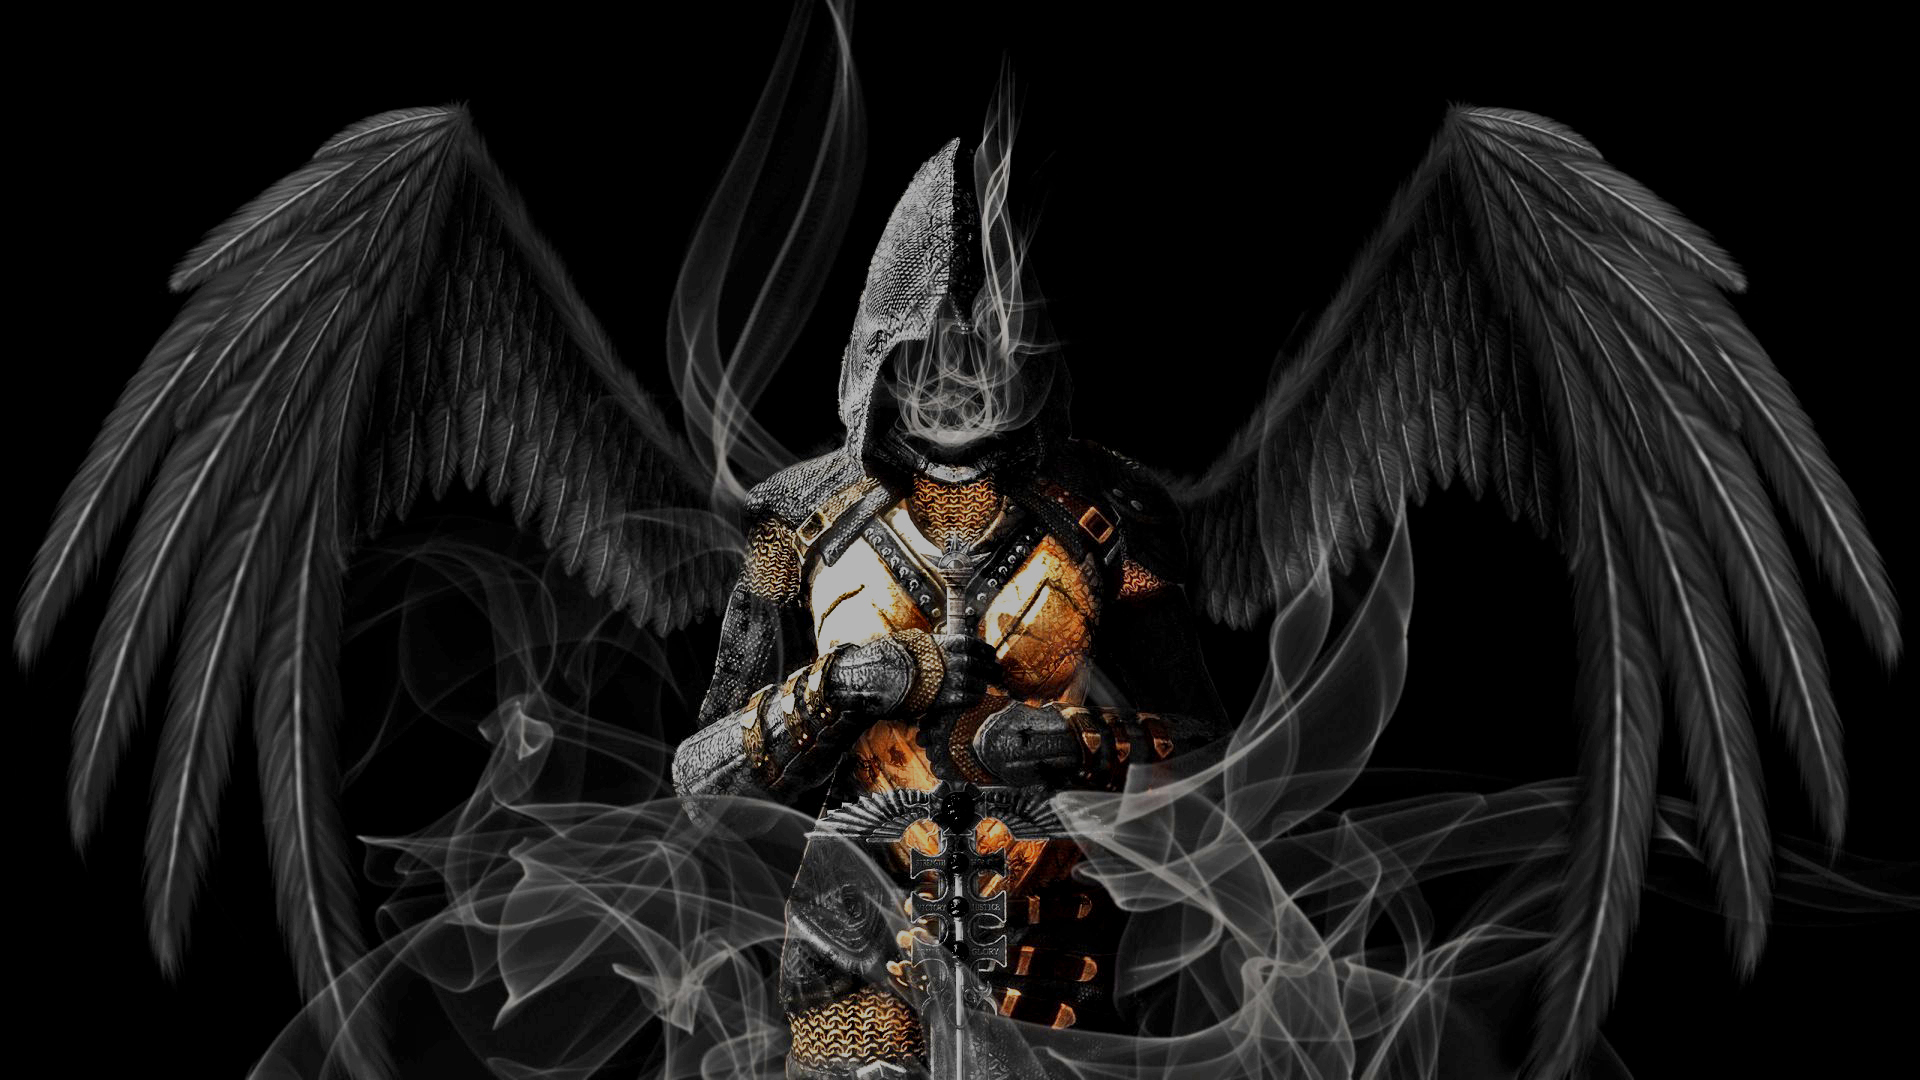 guerrero fondo de pantalla hd,personaje de ficción,demonio,oscuridad,ilustración,cg artwork